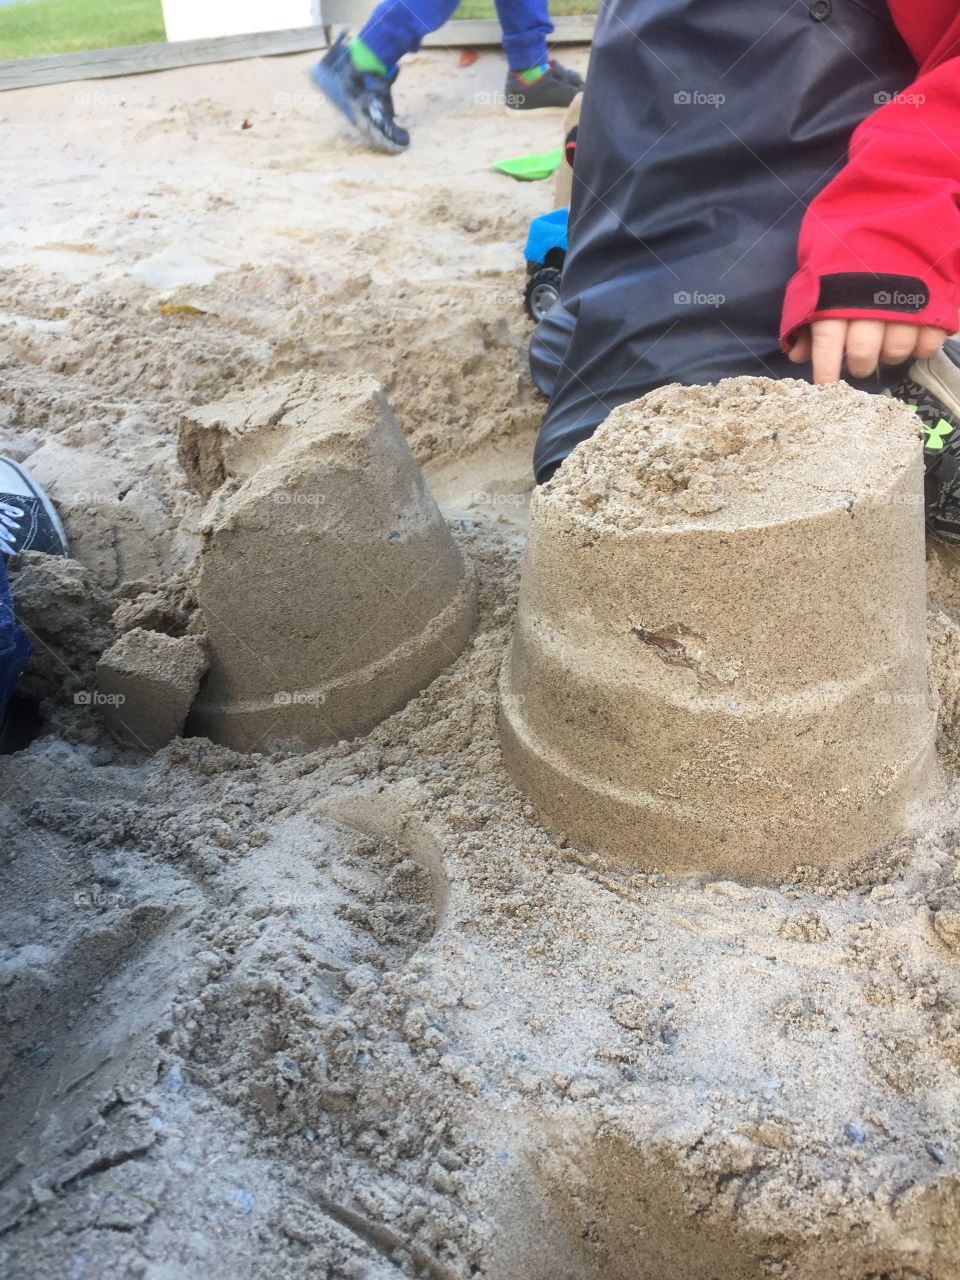 Building Sand castles 